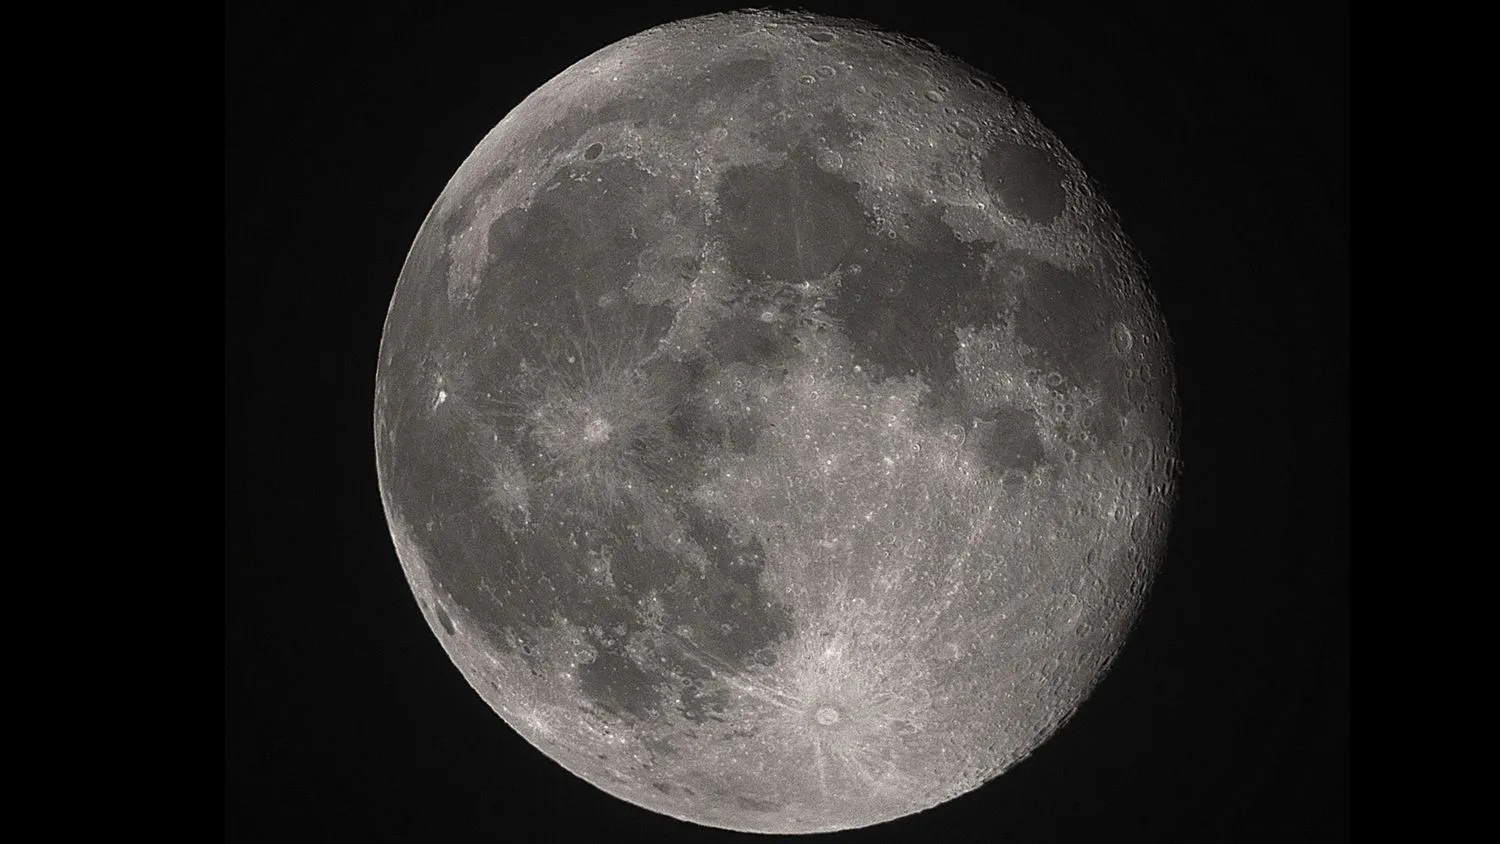 Beispielbild des Mondes aus dem Unistellar Oddysey Pro